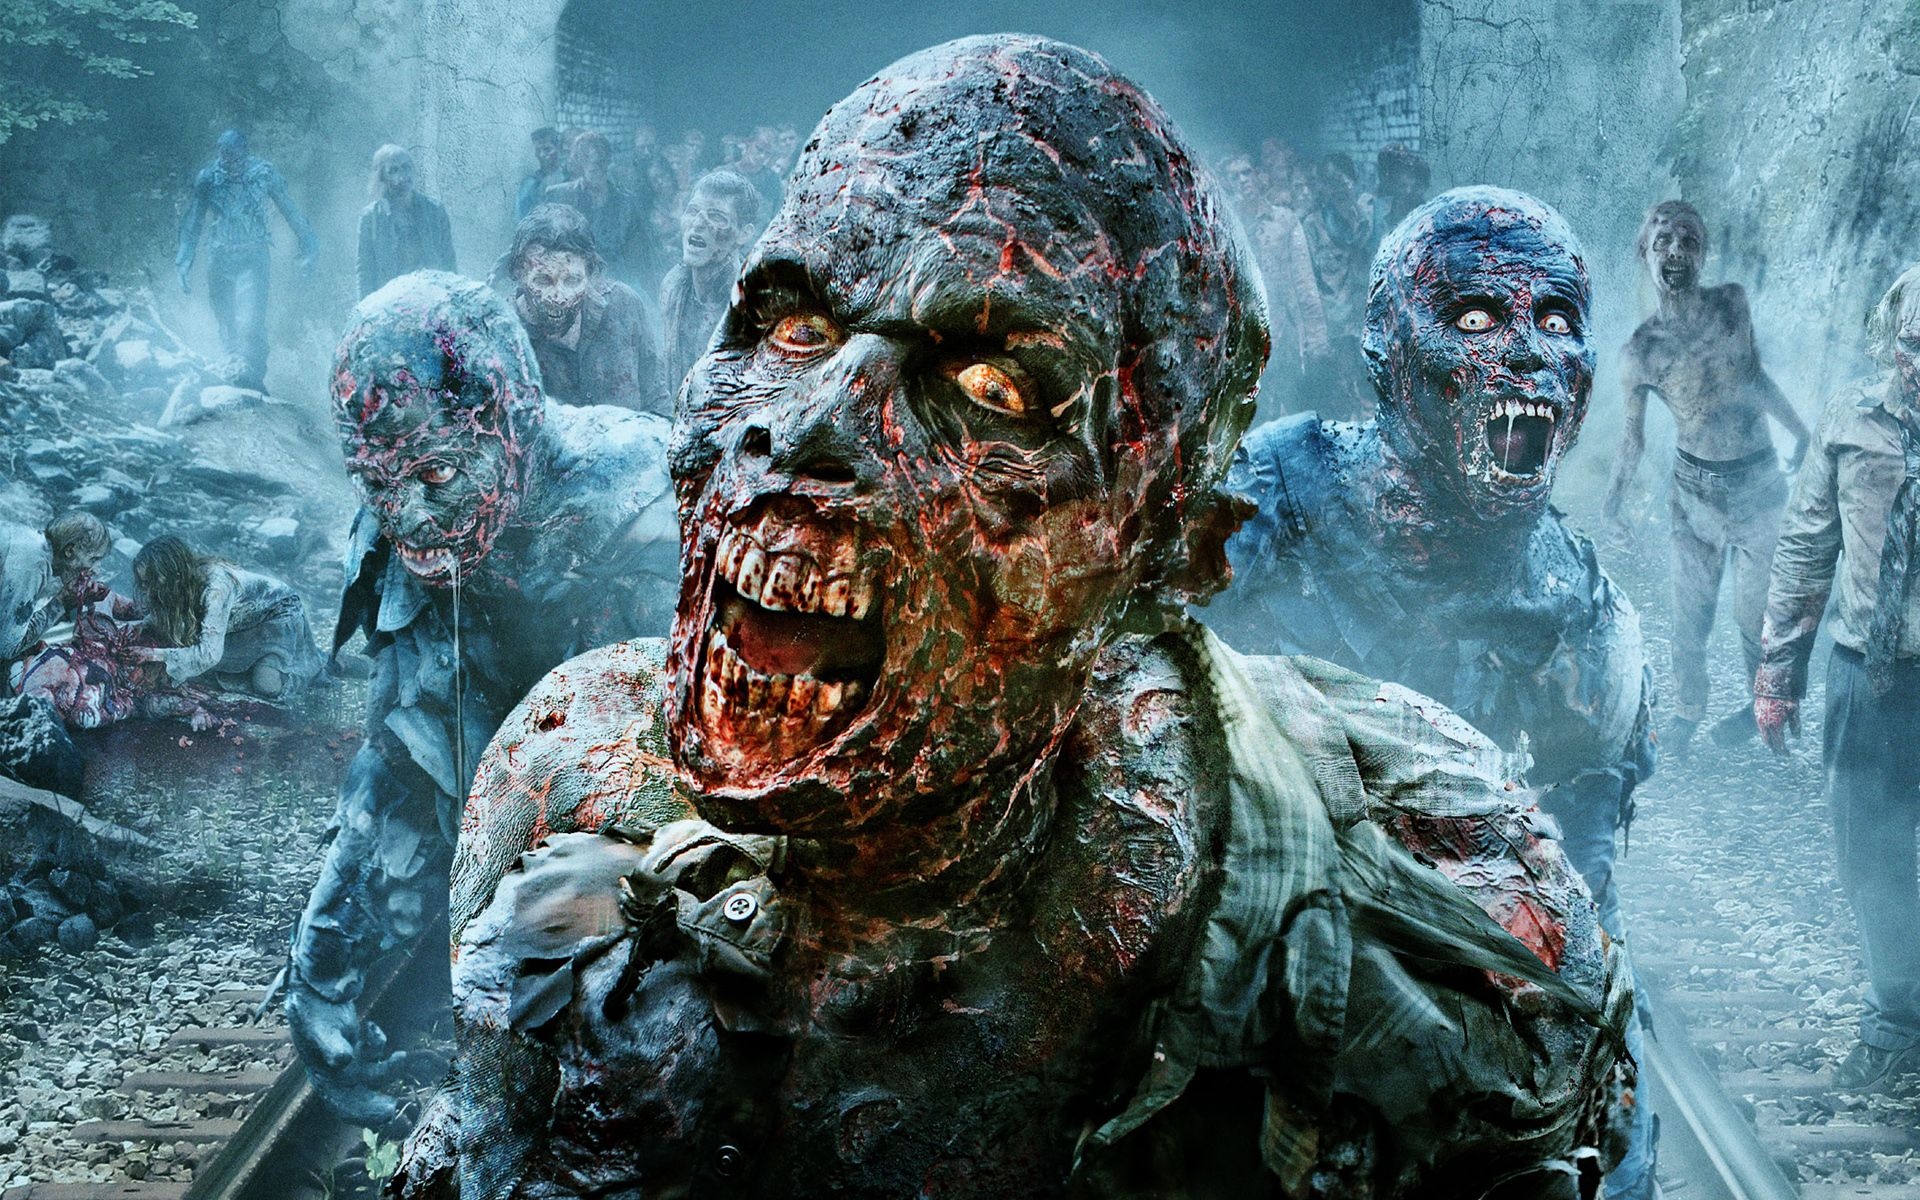 The Walking Dead zombies, Scary wallpaper, Zombie movies, Spooky atmosphere, 1920x1200 HD Desktop